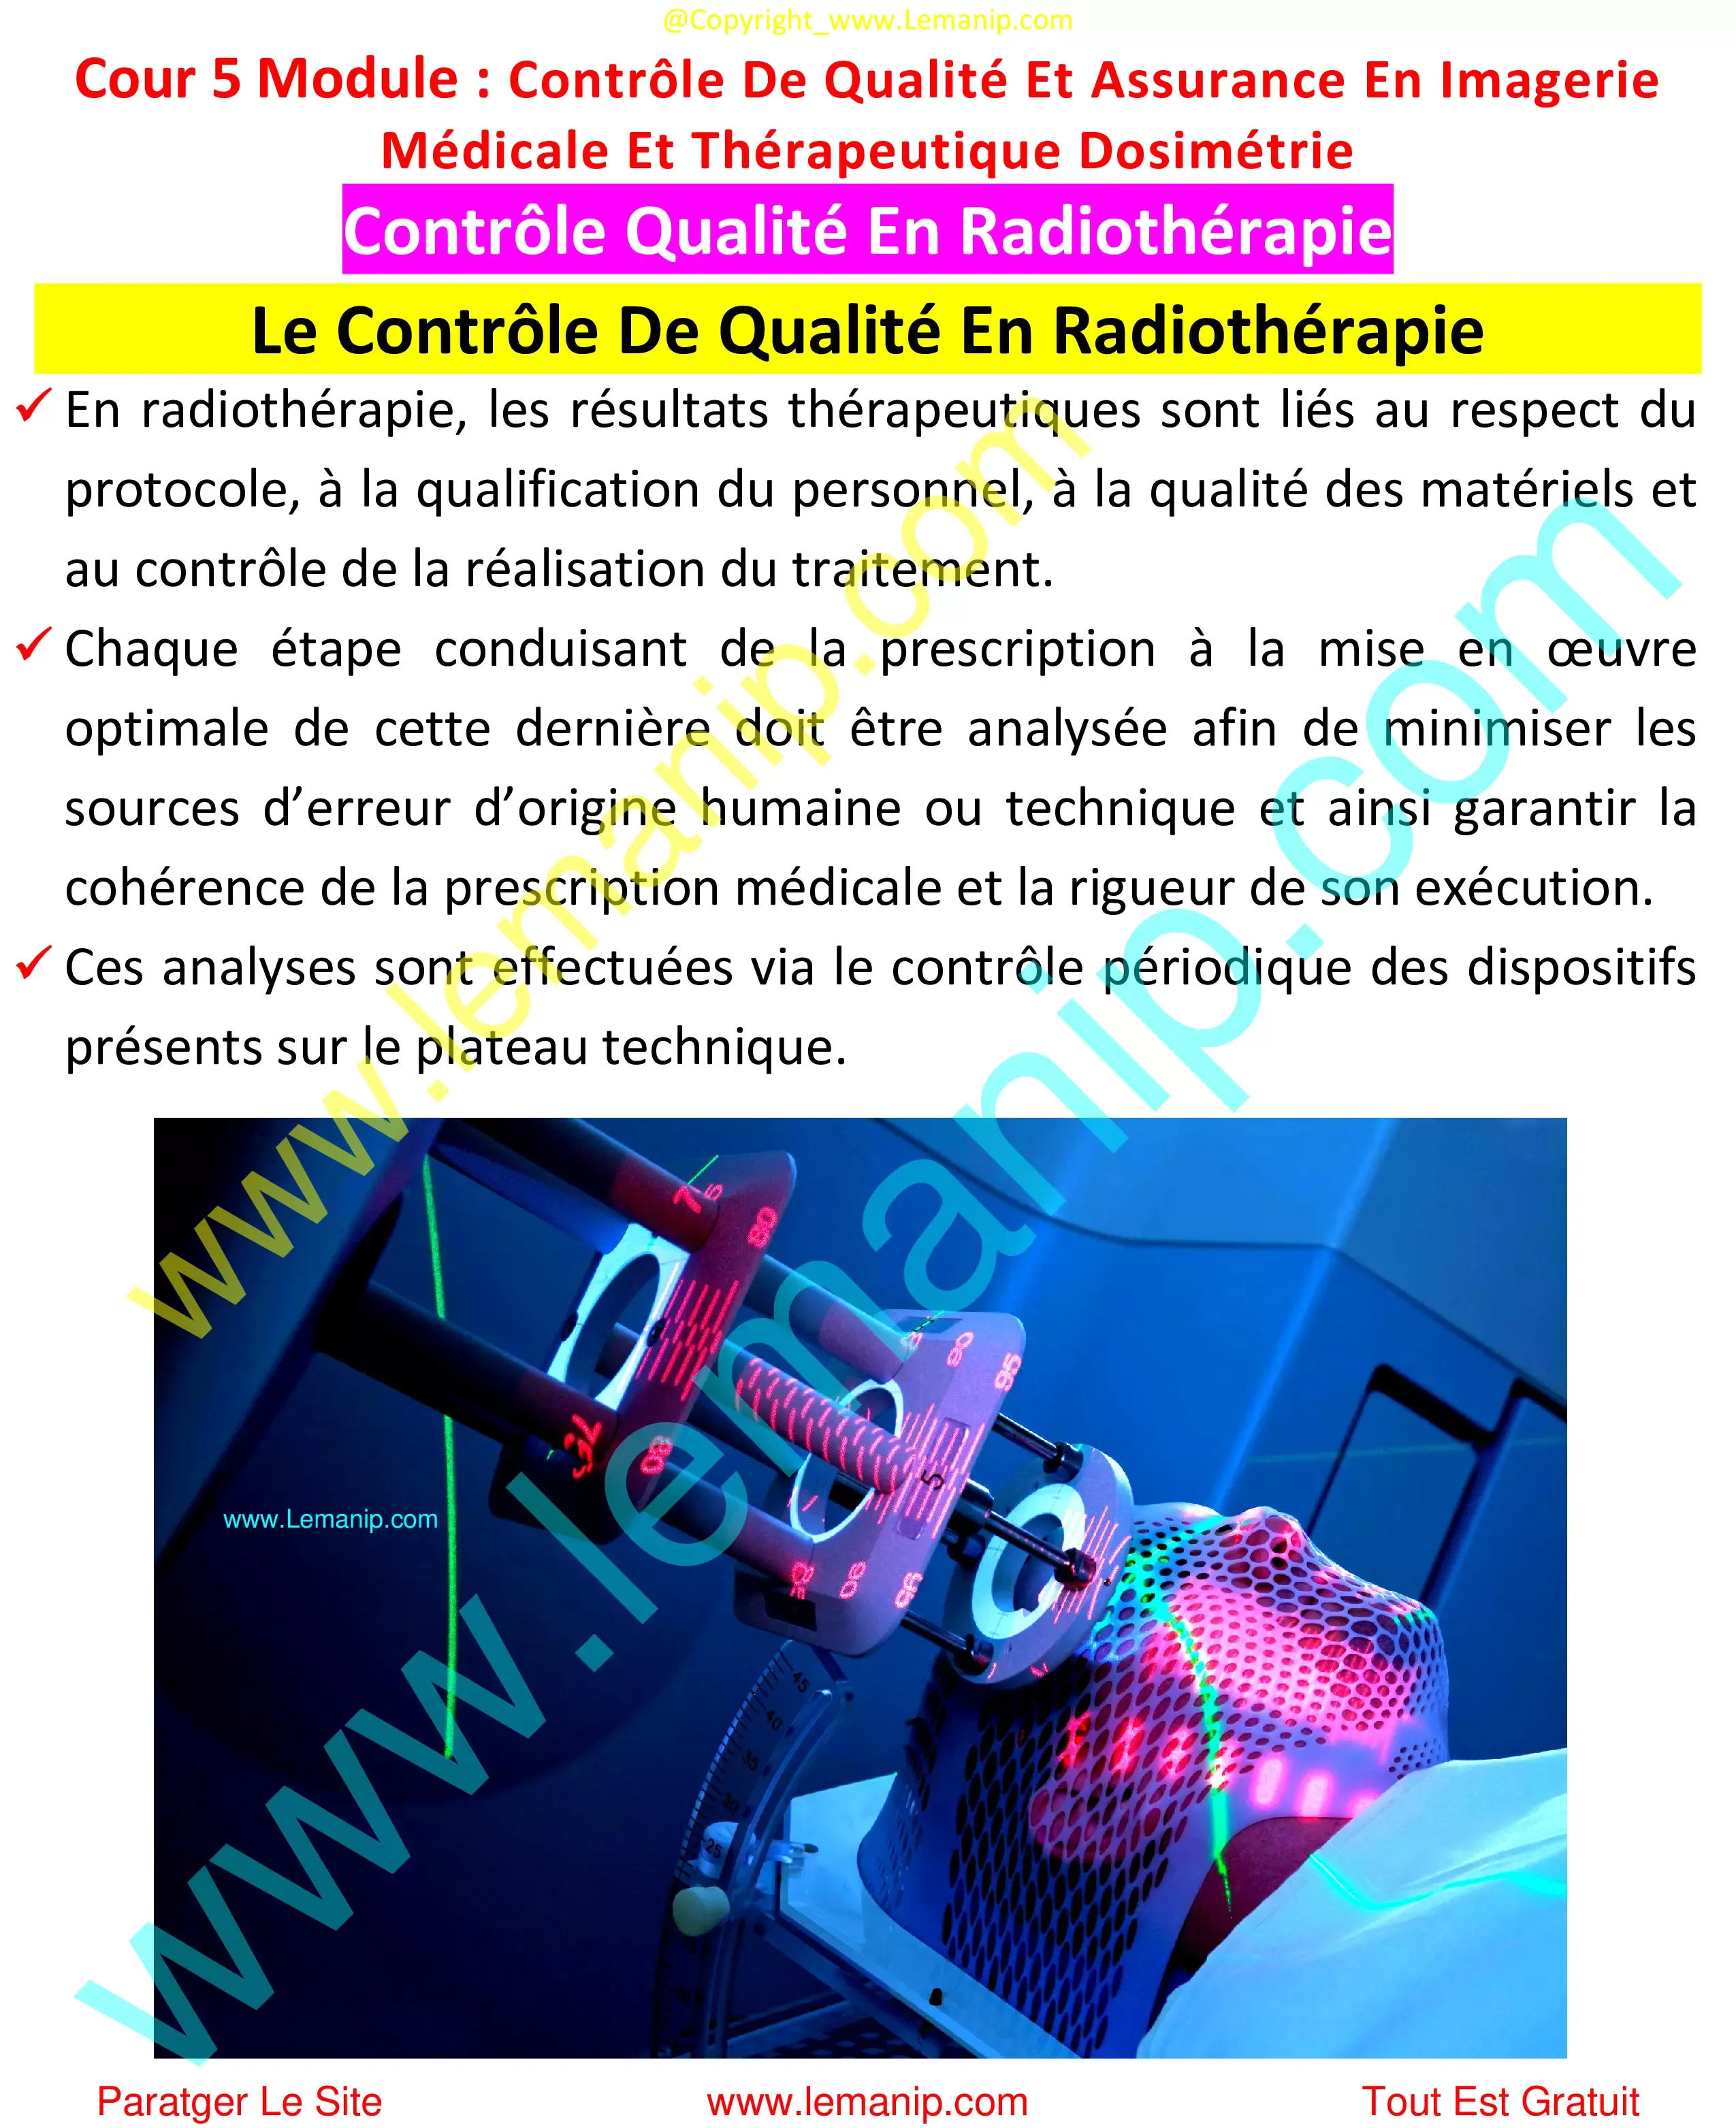 Le Contrôle De Qualité En Radiothérapie